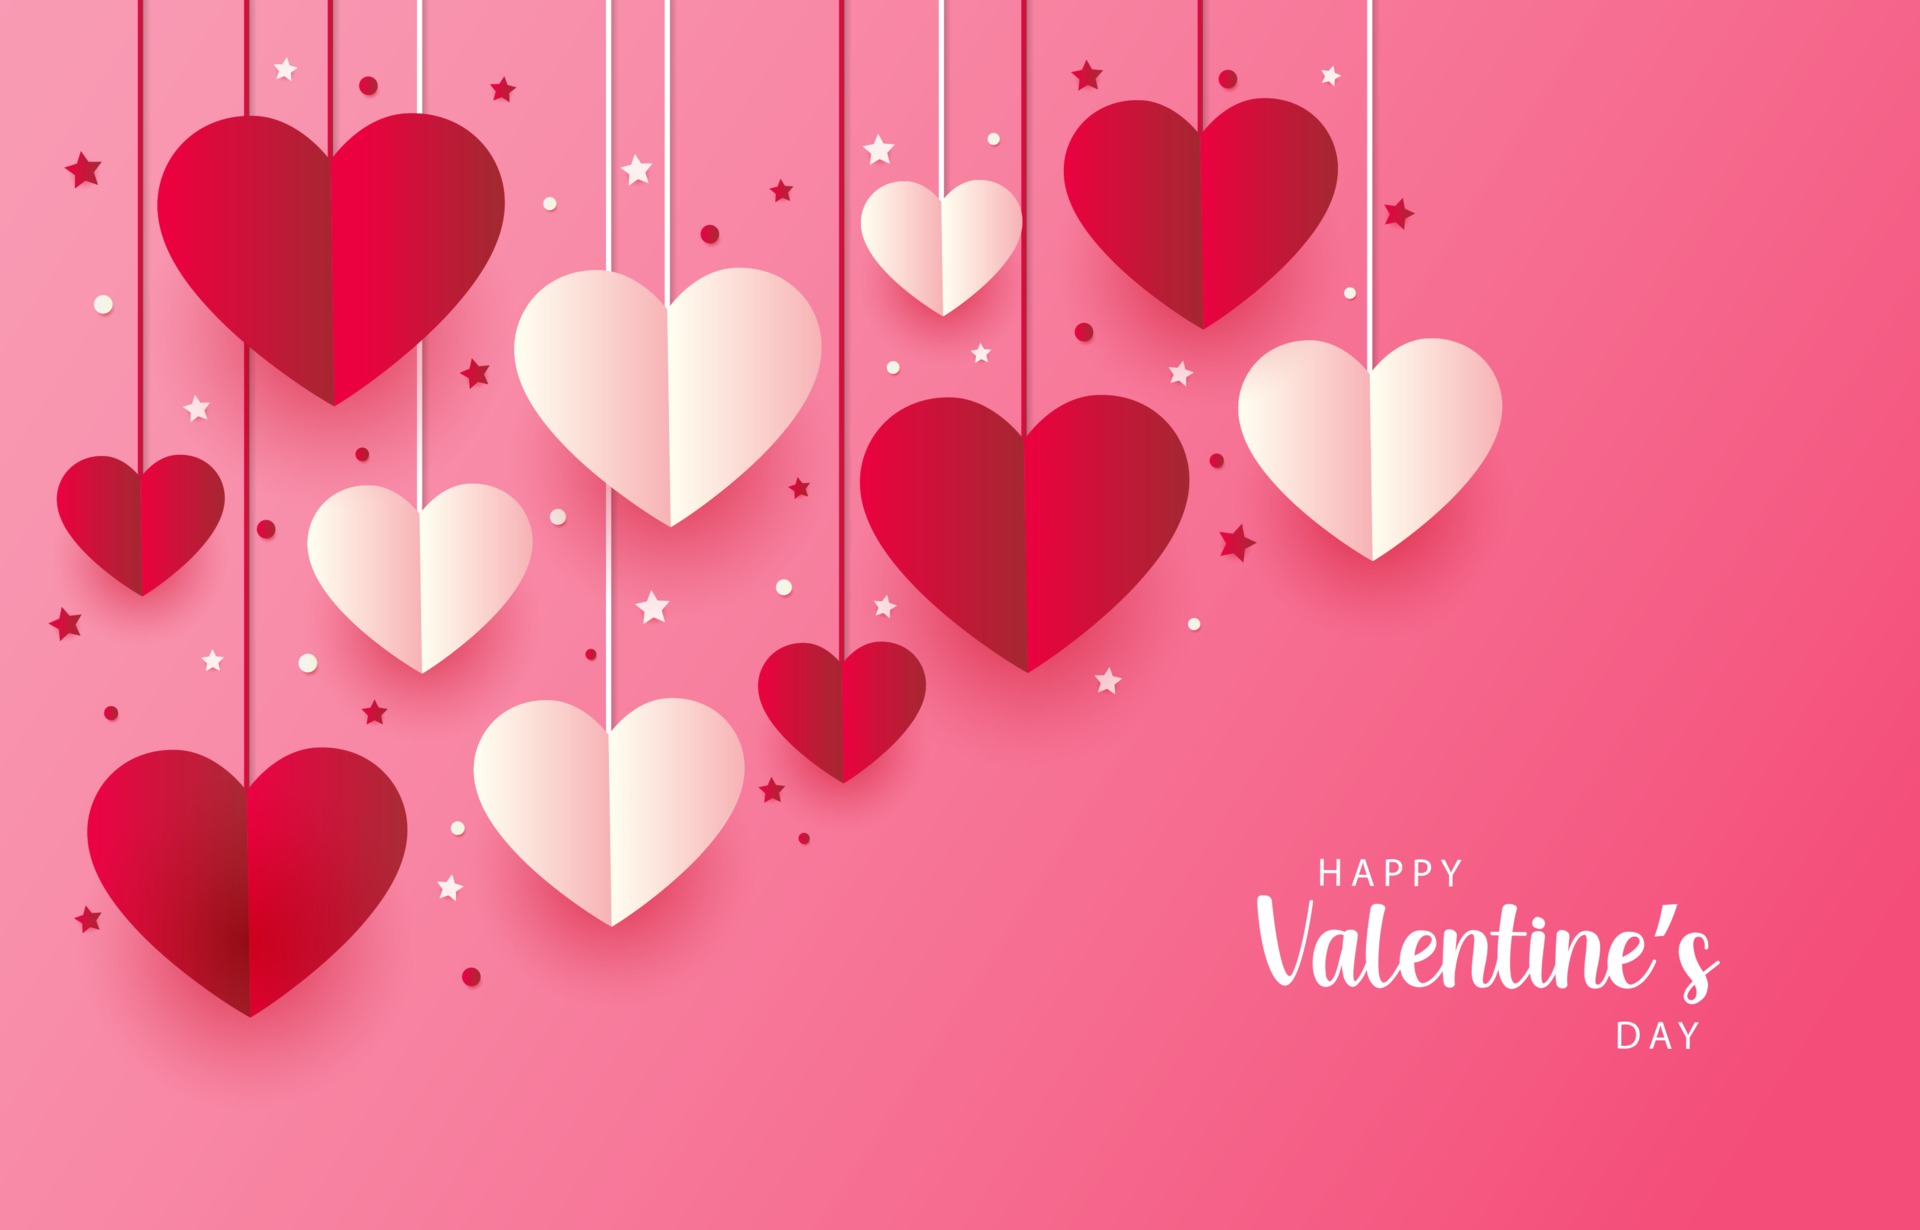 Một hình nền Valentine đẹp màu hồng với hình trái tim tình yêu sẽ làm cho màn hình yêu thích của bạn trở nên đáng yêu hơn bao giờ hết. Hãy truy cập vào bộ sưu tập của chúng tôi và lựa chọn một hình nền tuyệt đẹp để tặng cho người mình yêu thương trong mùa lễ tình yêu sắp tới.